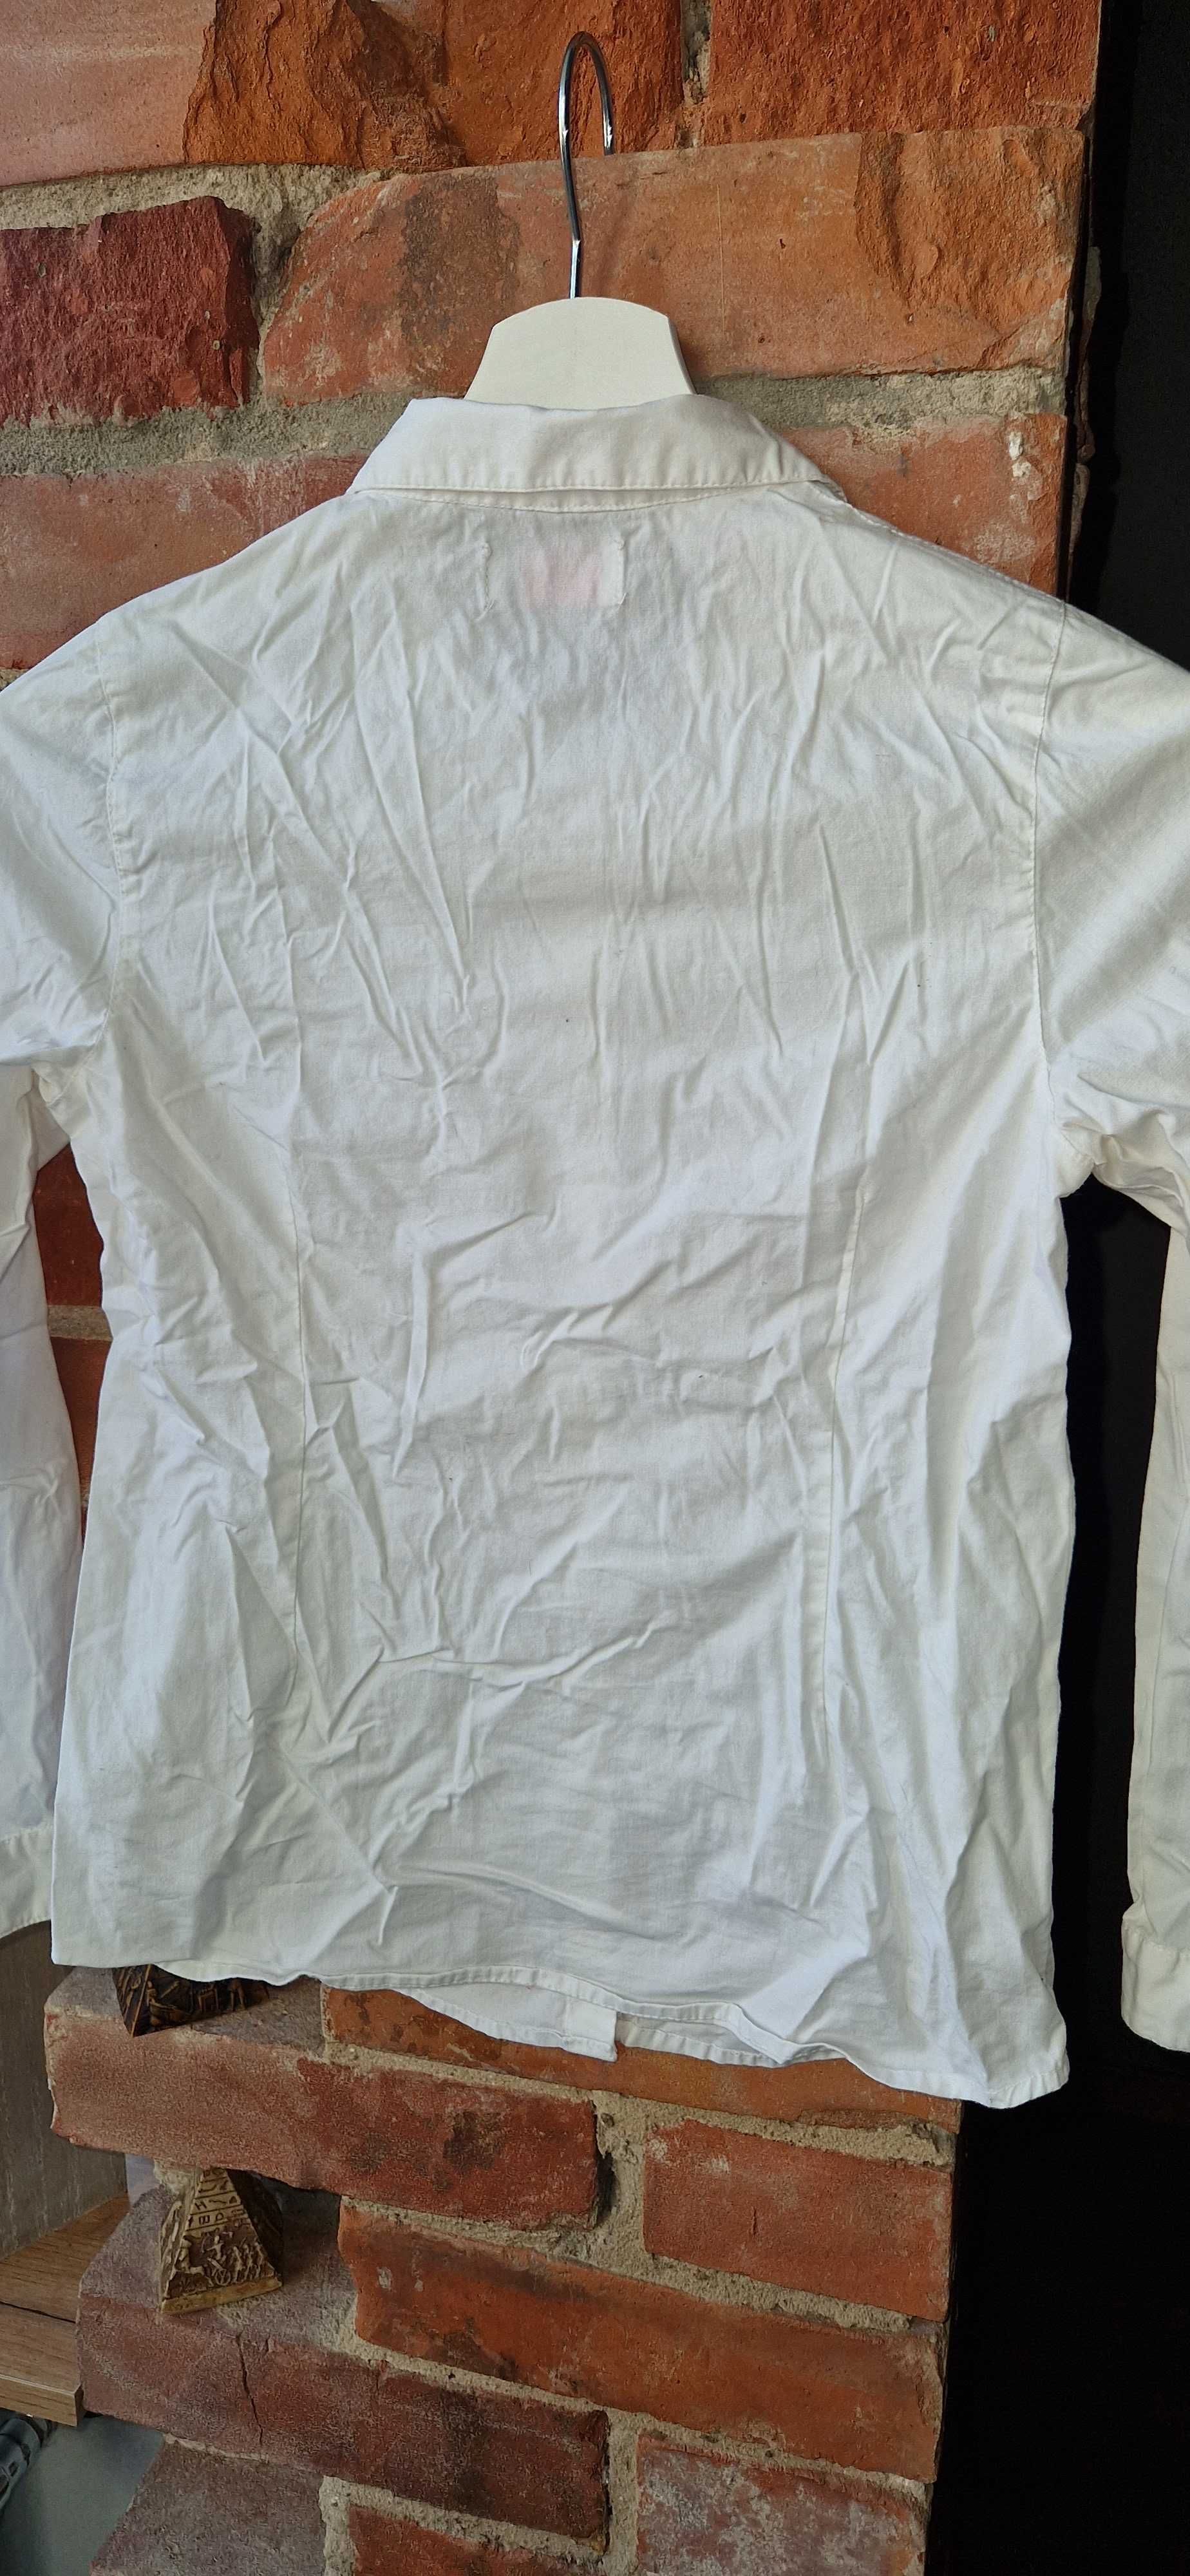 Klasyczna biała koszula długi rękaw egzamin 140 Lincoln&Sharks 5 10 15